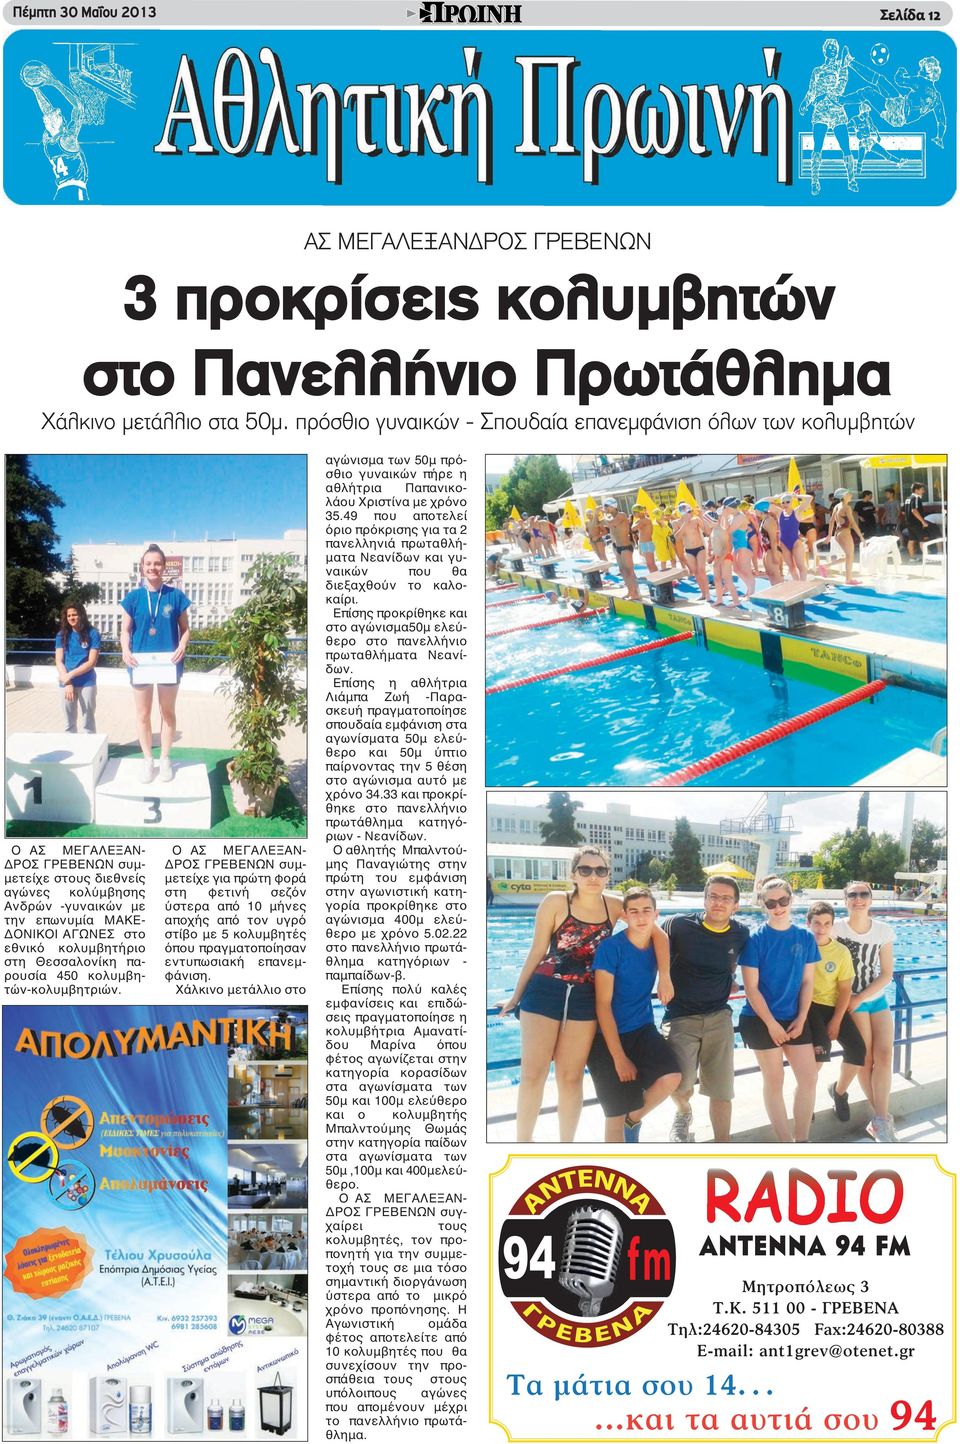 κολυμβητήριο στη Θεσσαλονίκη παρουσία 450 κολυμβητών-κολυμβητριών.